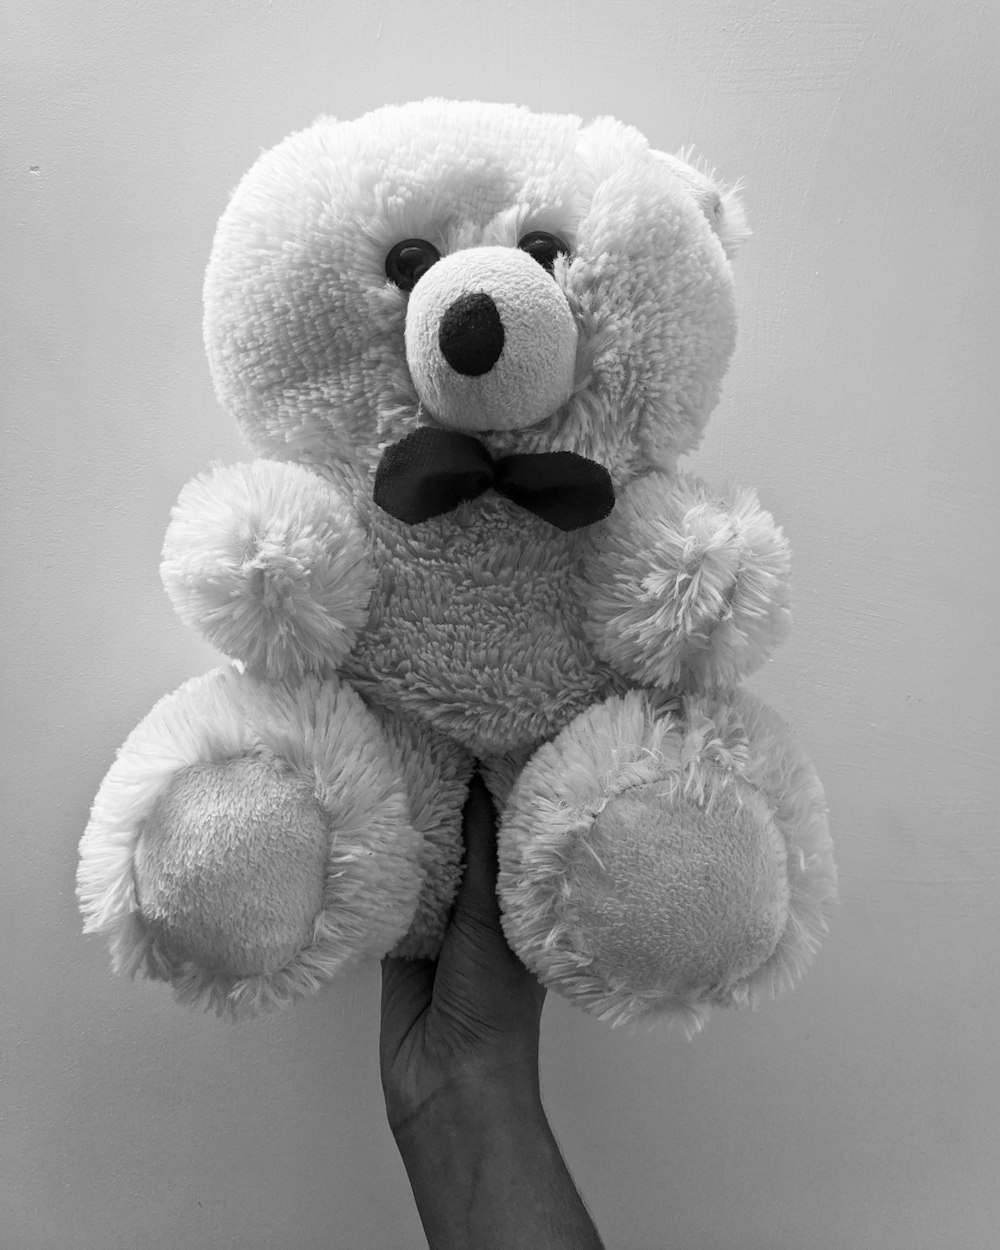 white teddy bear on white textile